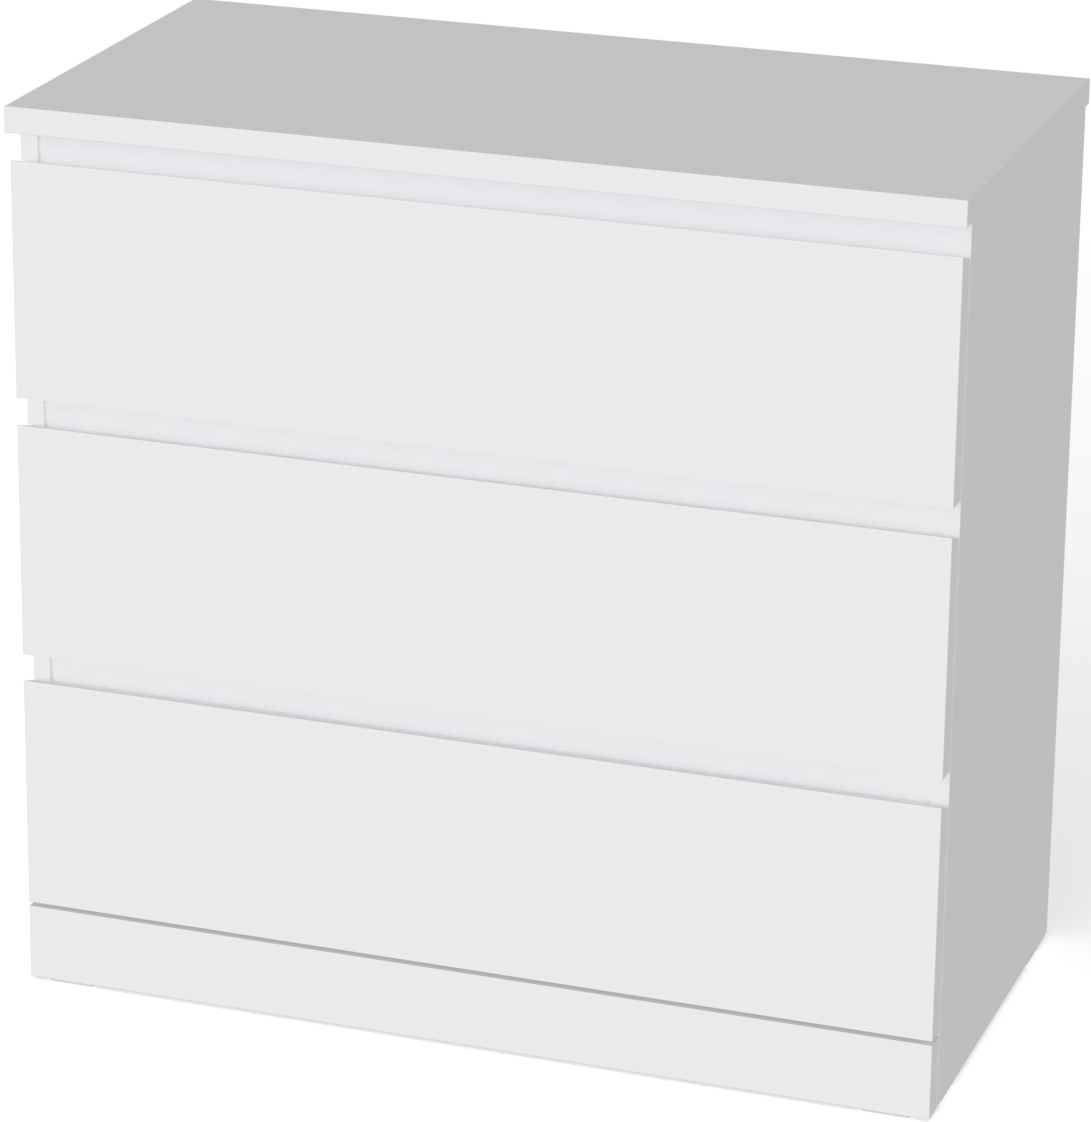 Варма 3 комод с 3 ящиками, белый, 80x78x40 (Malm IKEA)